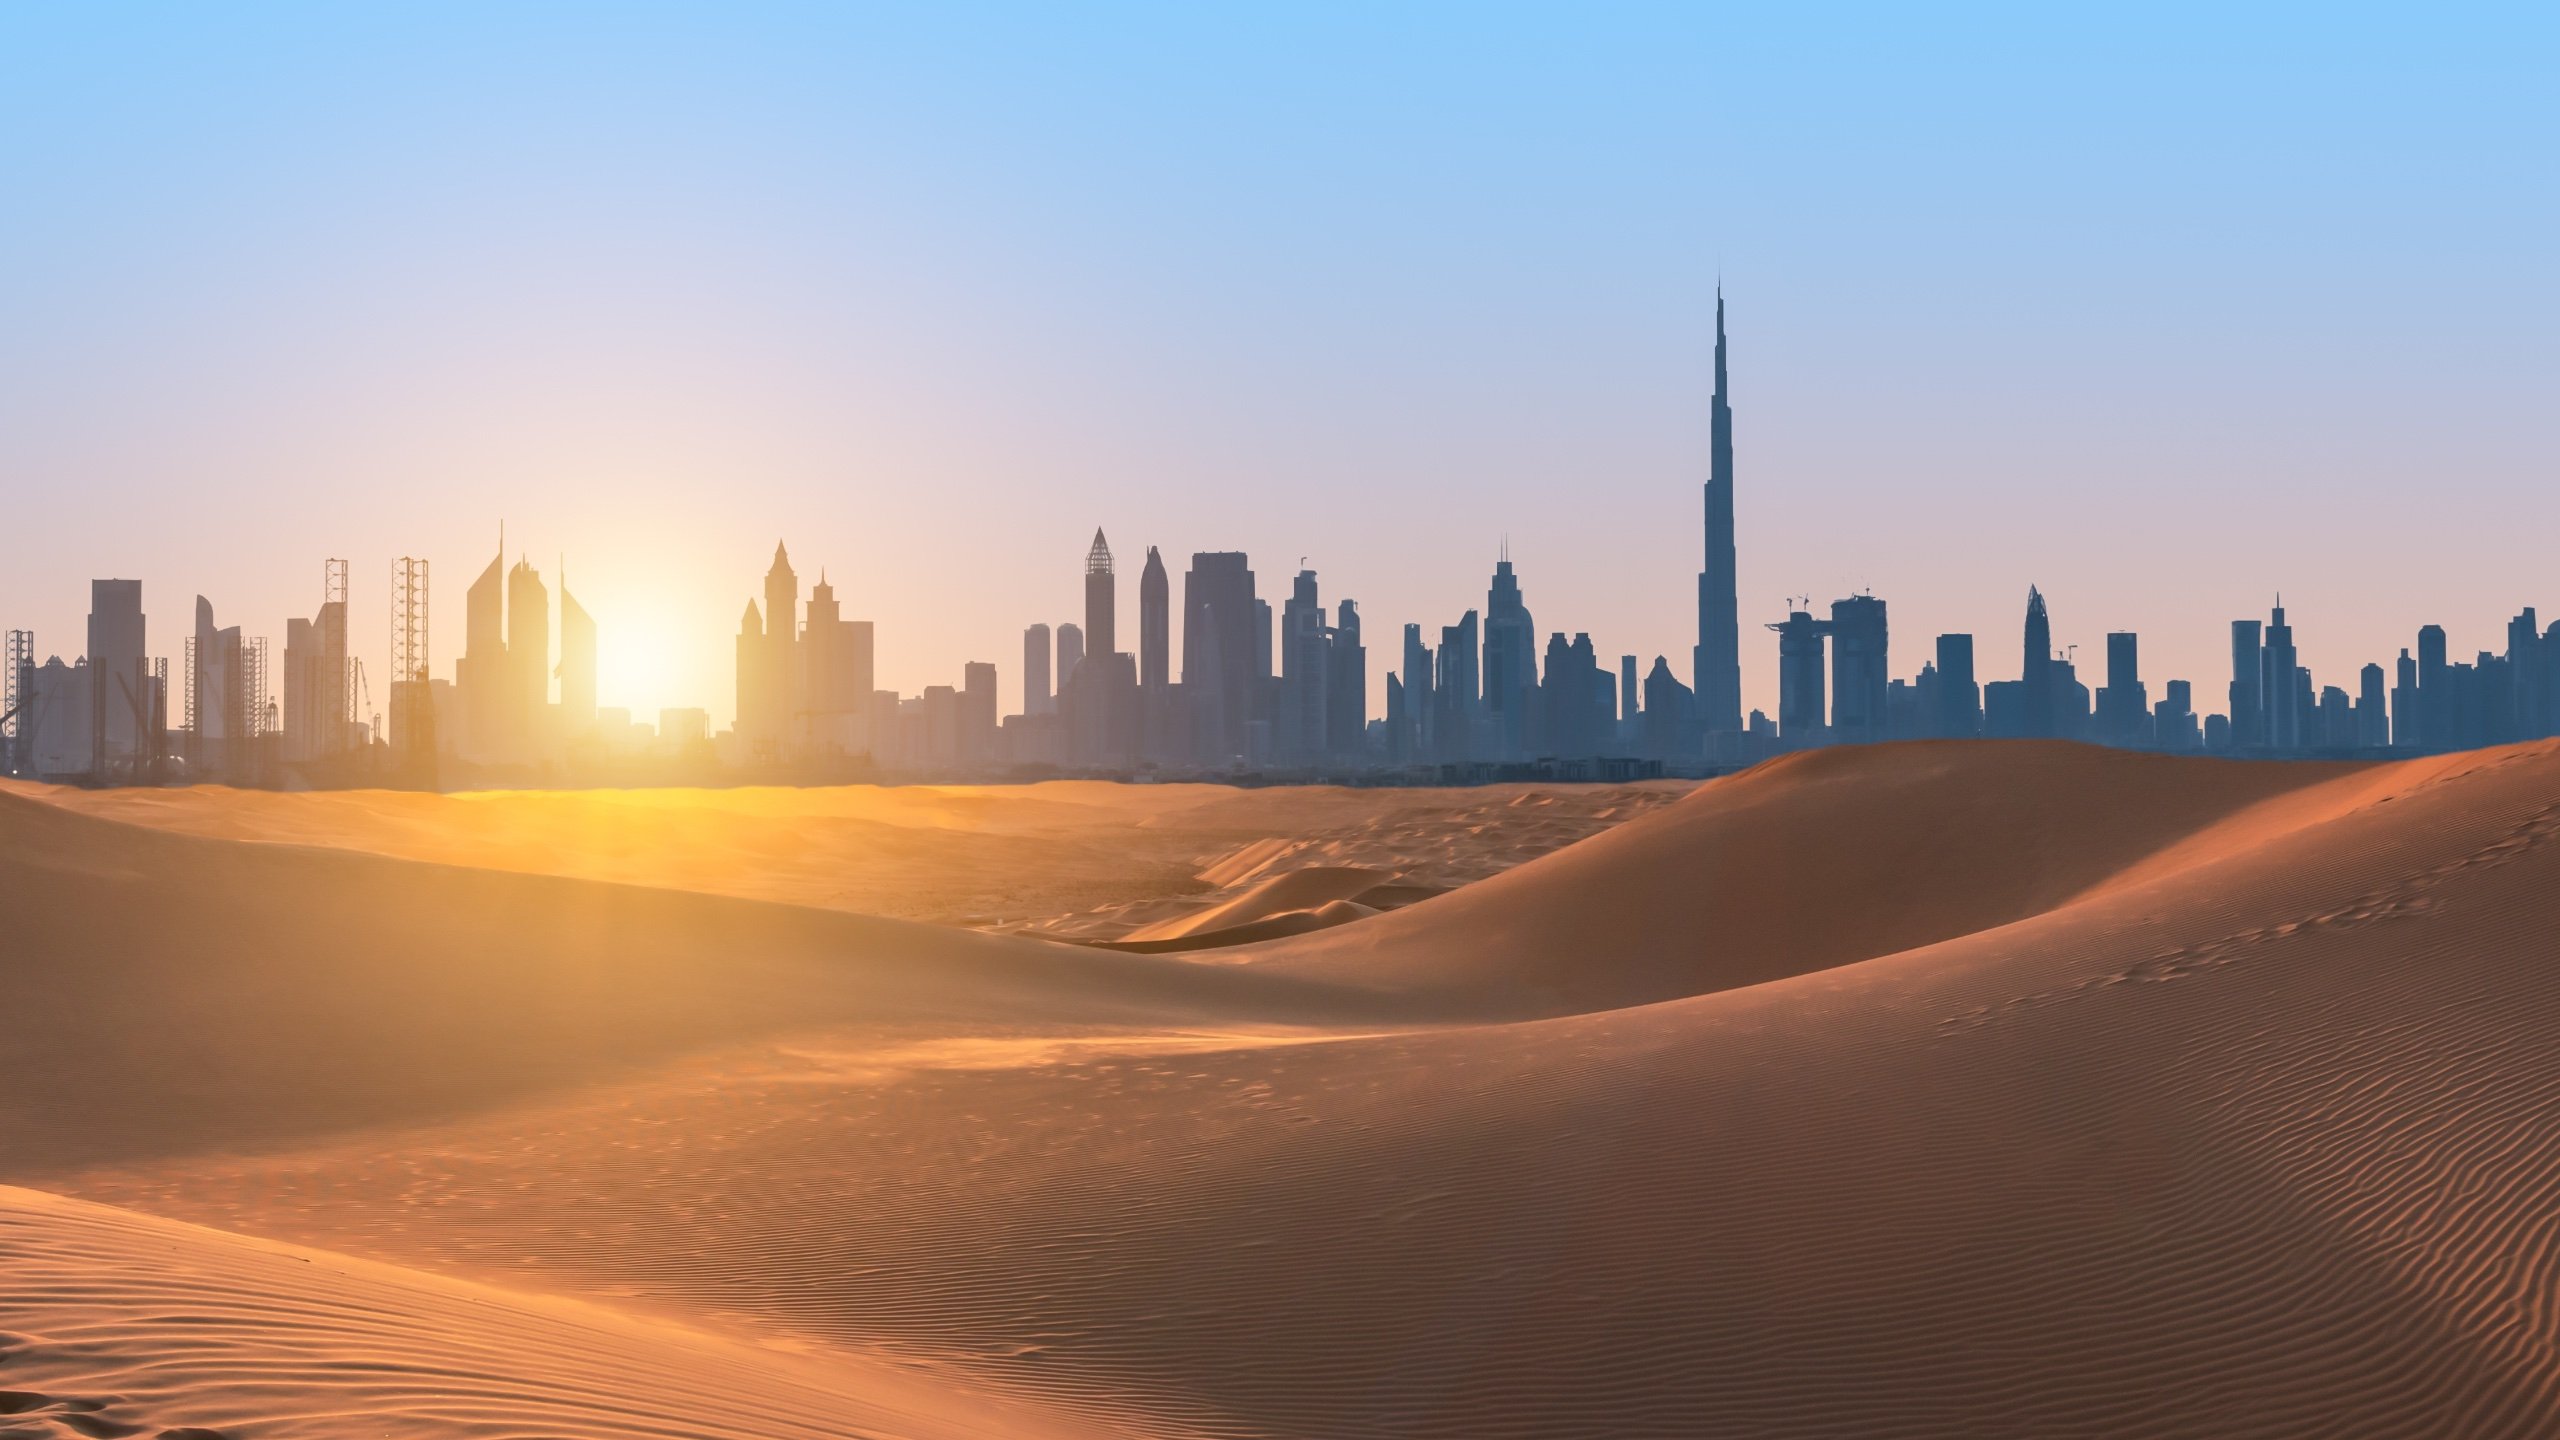 Förenade Arabemiratens president inrättar AI-rådet med ny lag